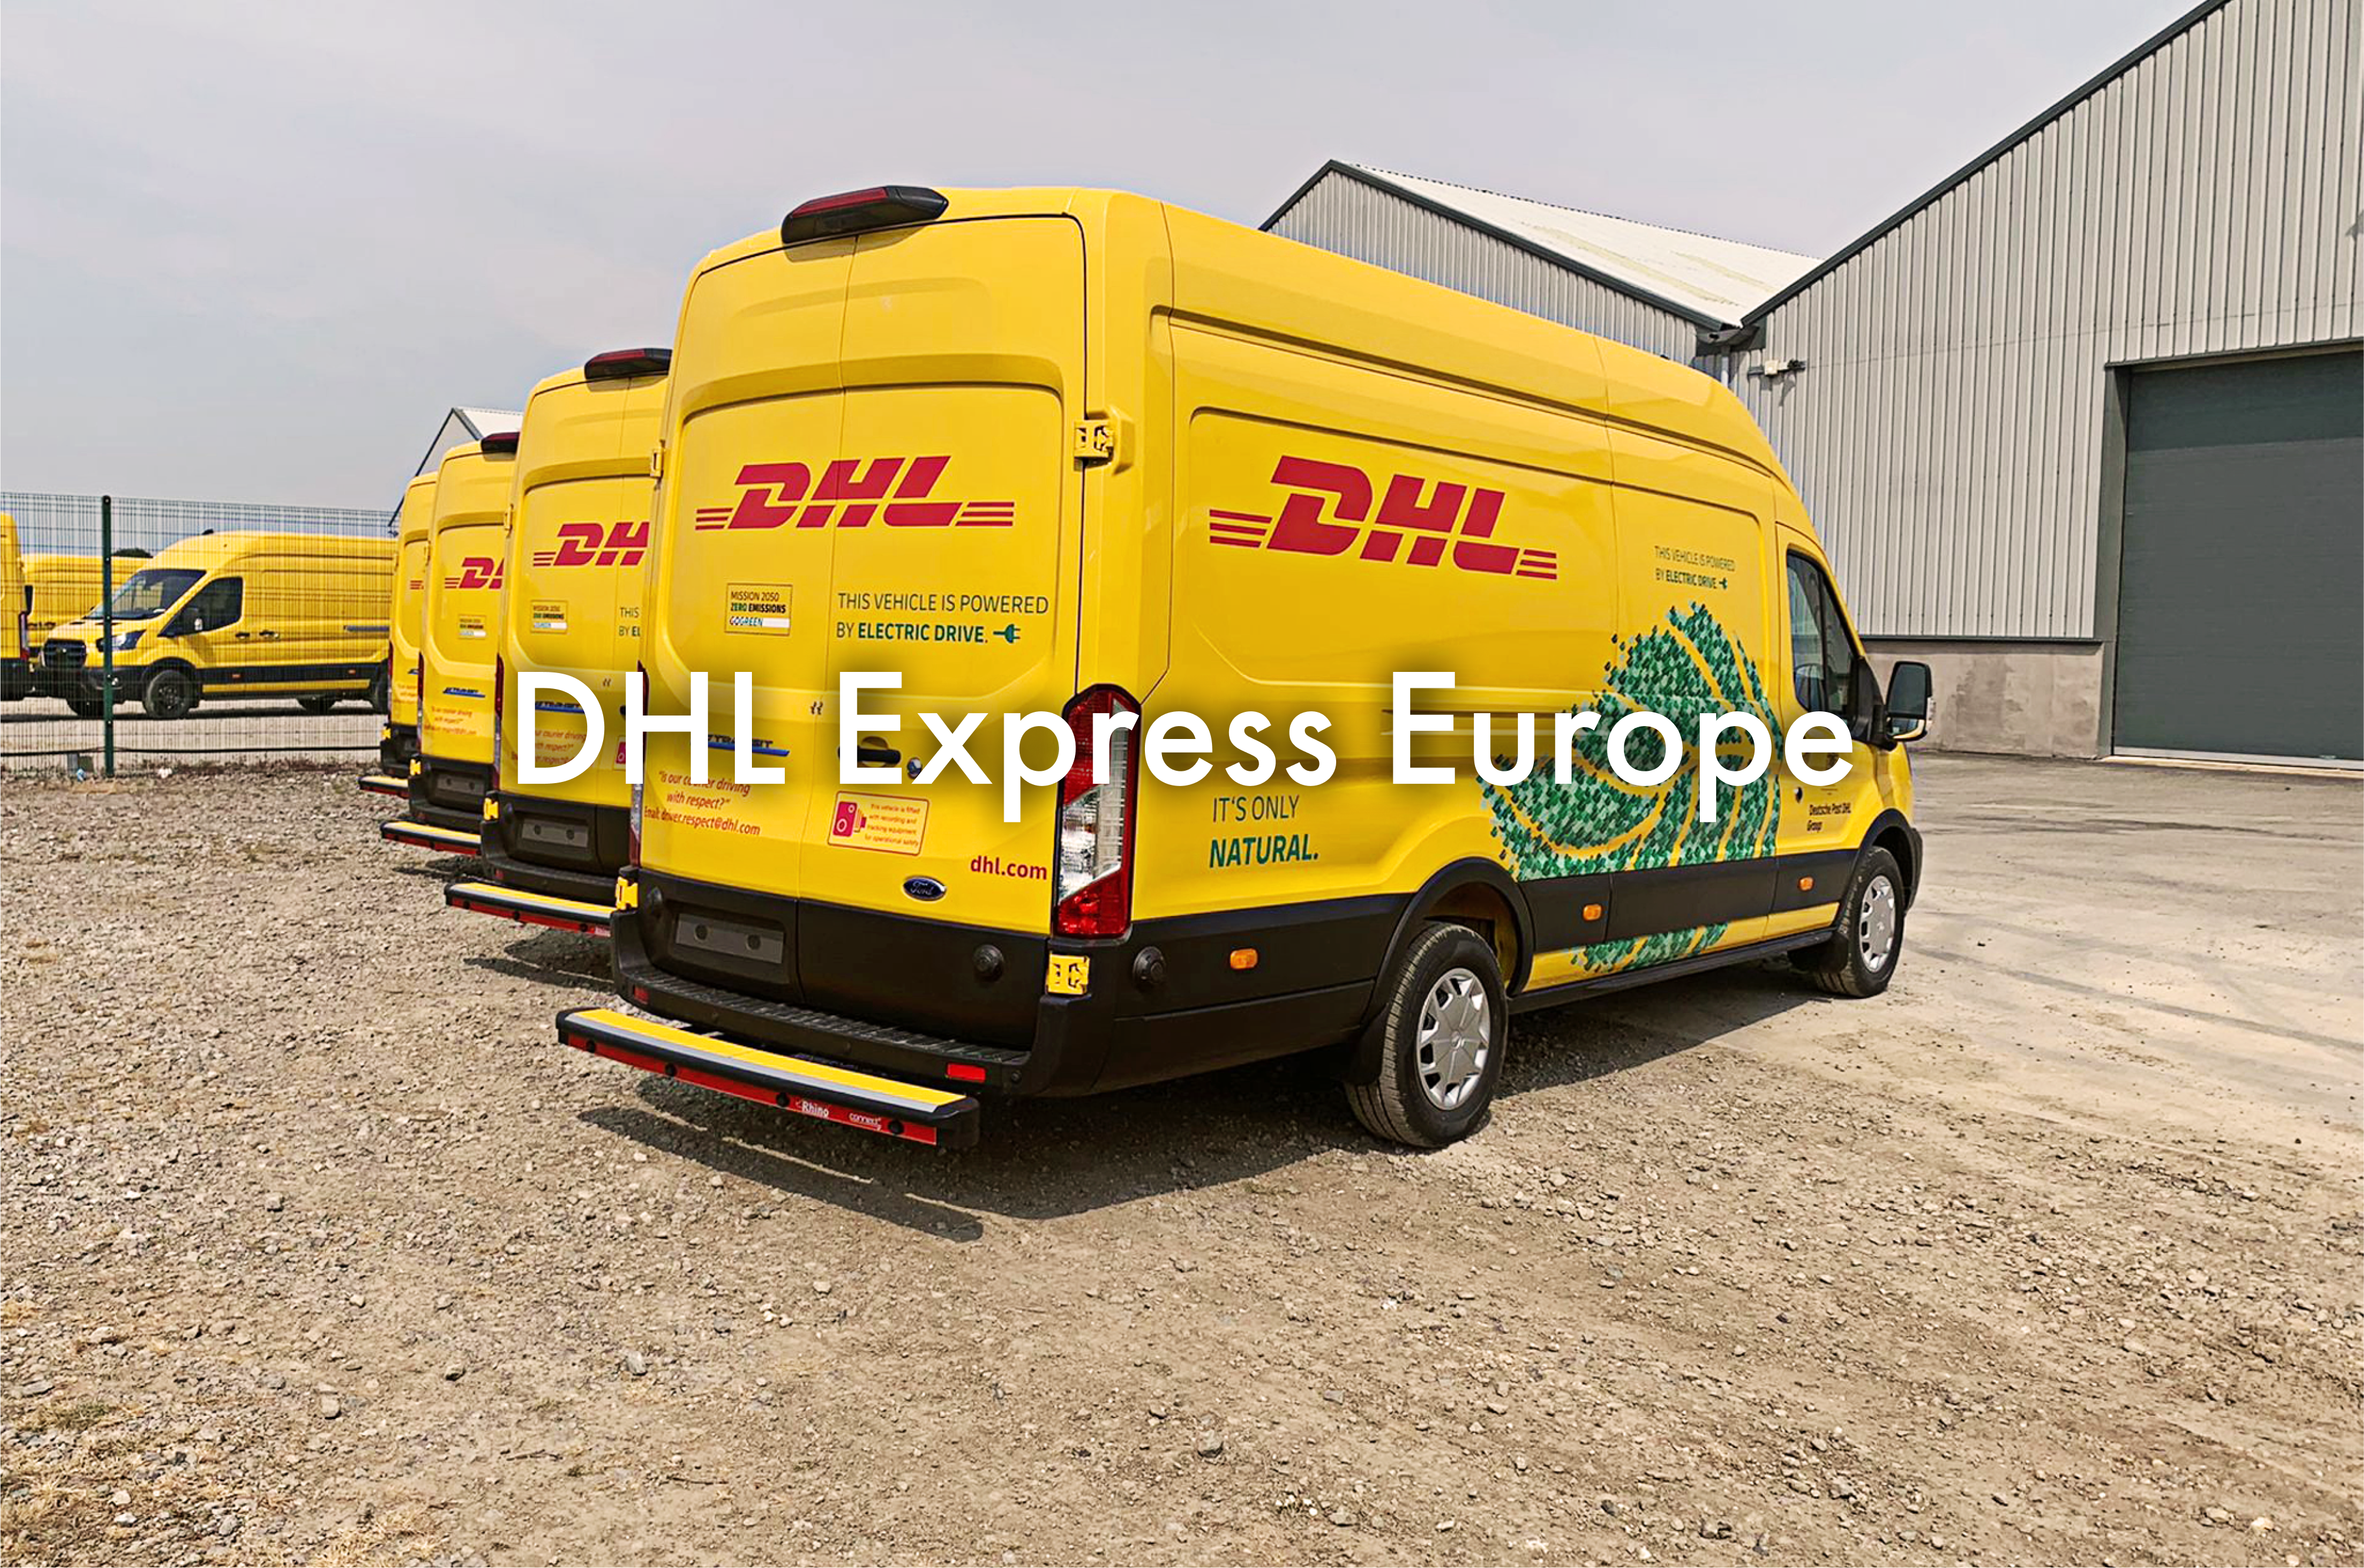 DHL Express Europe